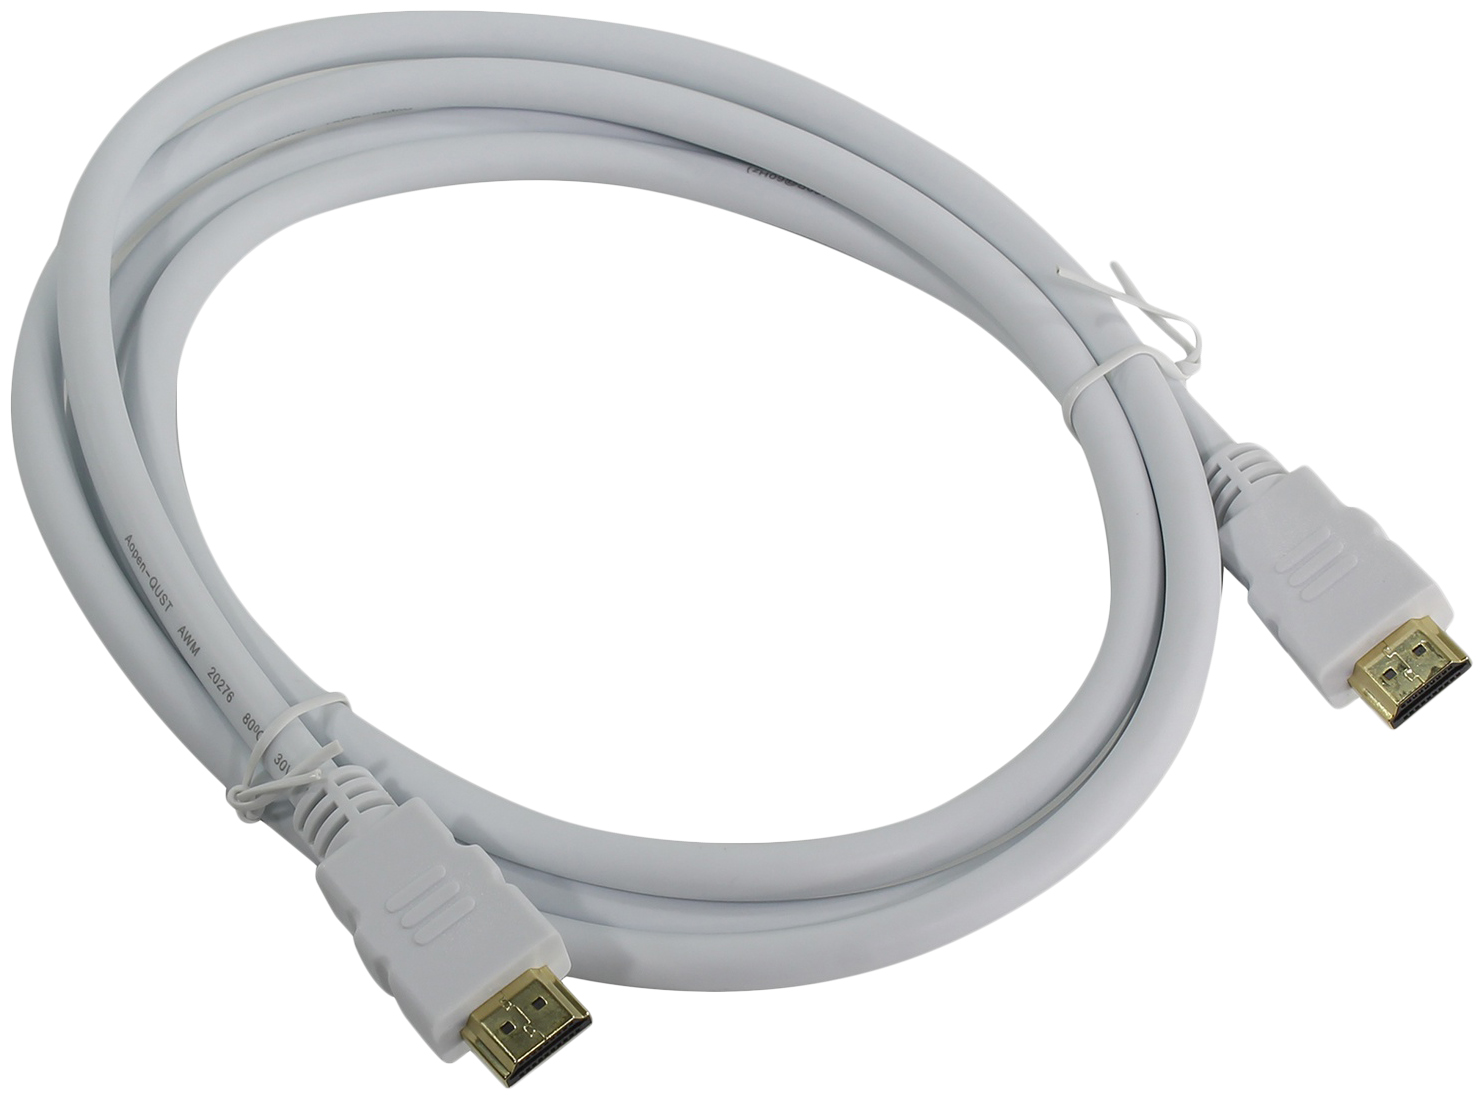 

Кабель Aopen HDMI - HDMI, 1,8м White (ACG711W), Белый, ACG711W